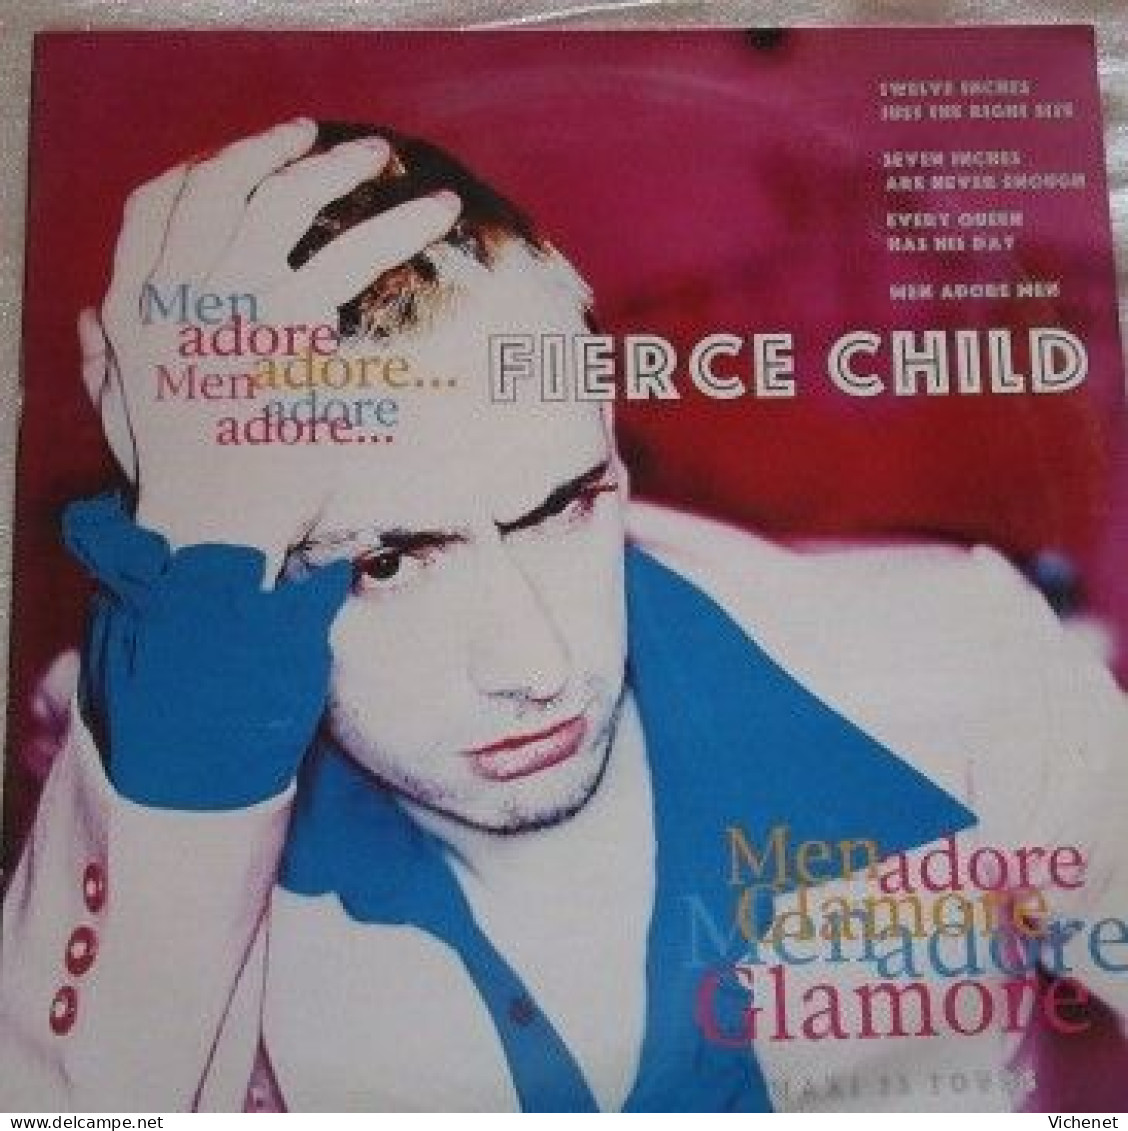 Fierce Child – Men Adore - Maxi - 45 Rpm - Maxi-Single